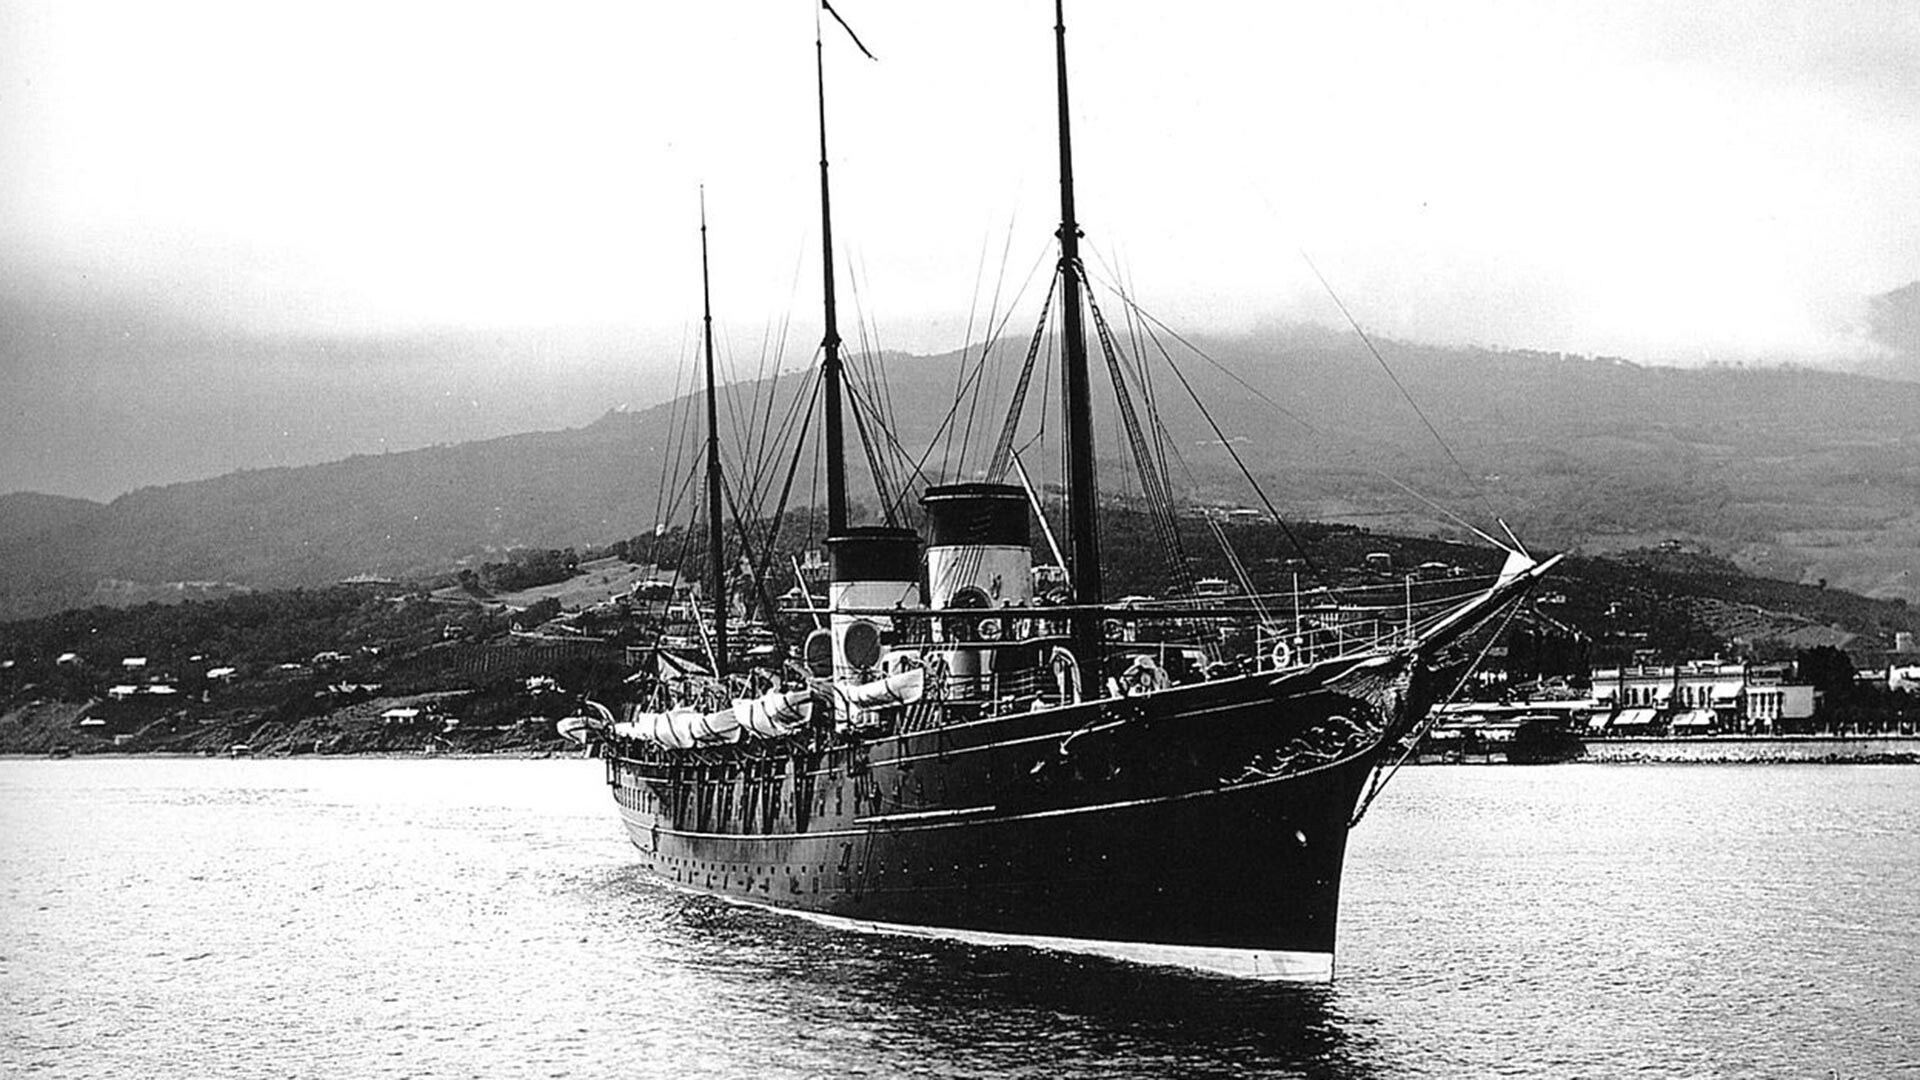 Руска царска јахта „Штандарт“ (1893–1961), на обали Крима, у близини Јалте, 1898. године.